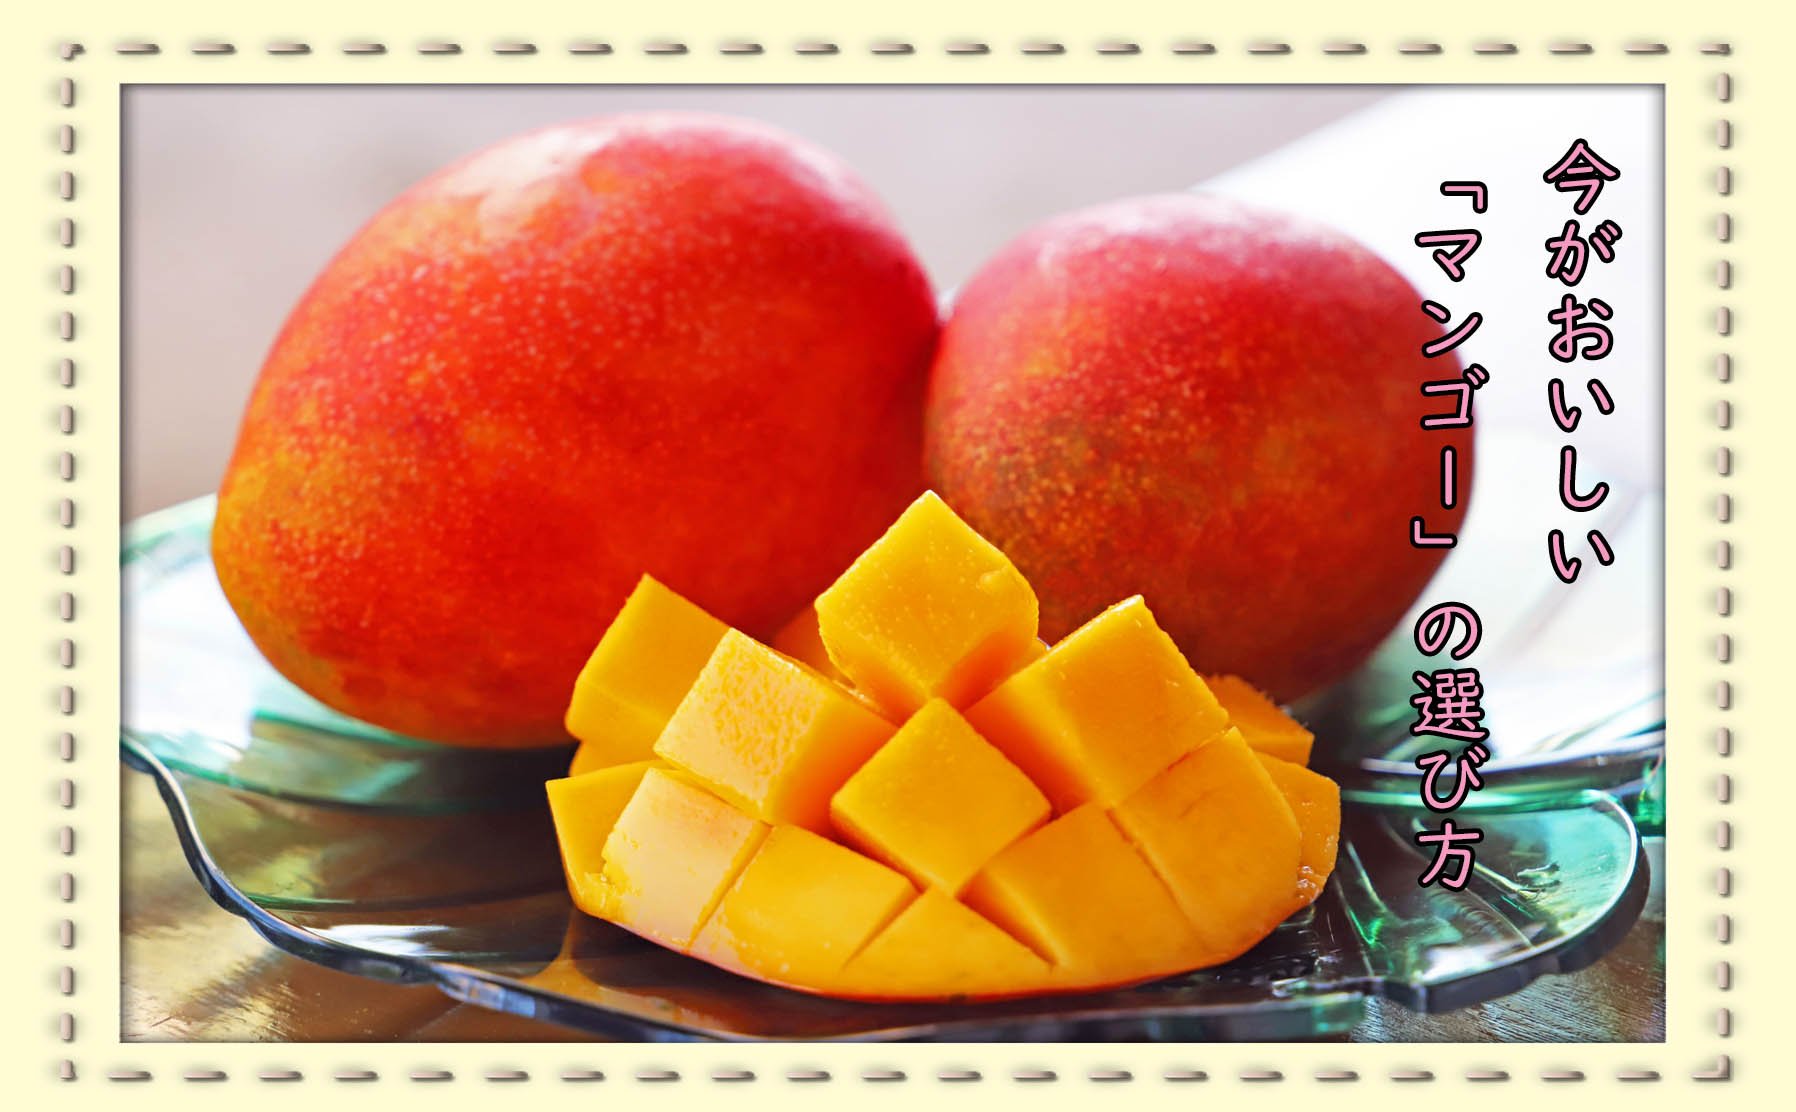 なめらかな食感と芳醇な香りが魅力の南国フルーツ「マンゴー」